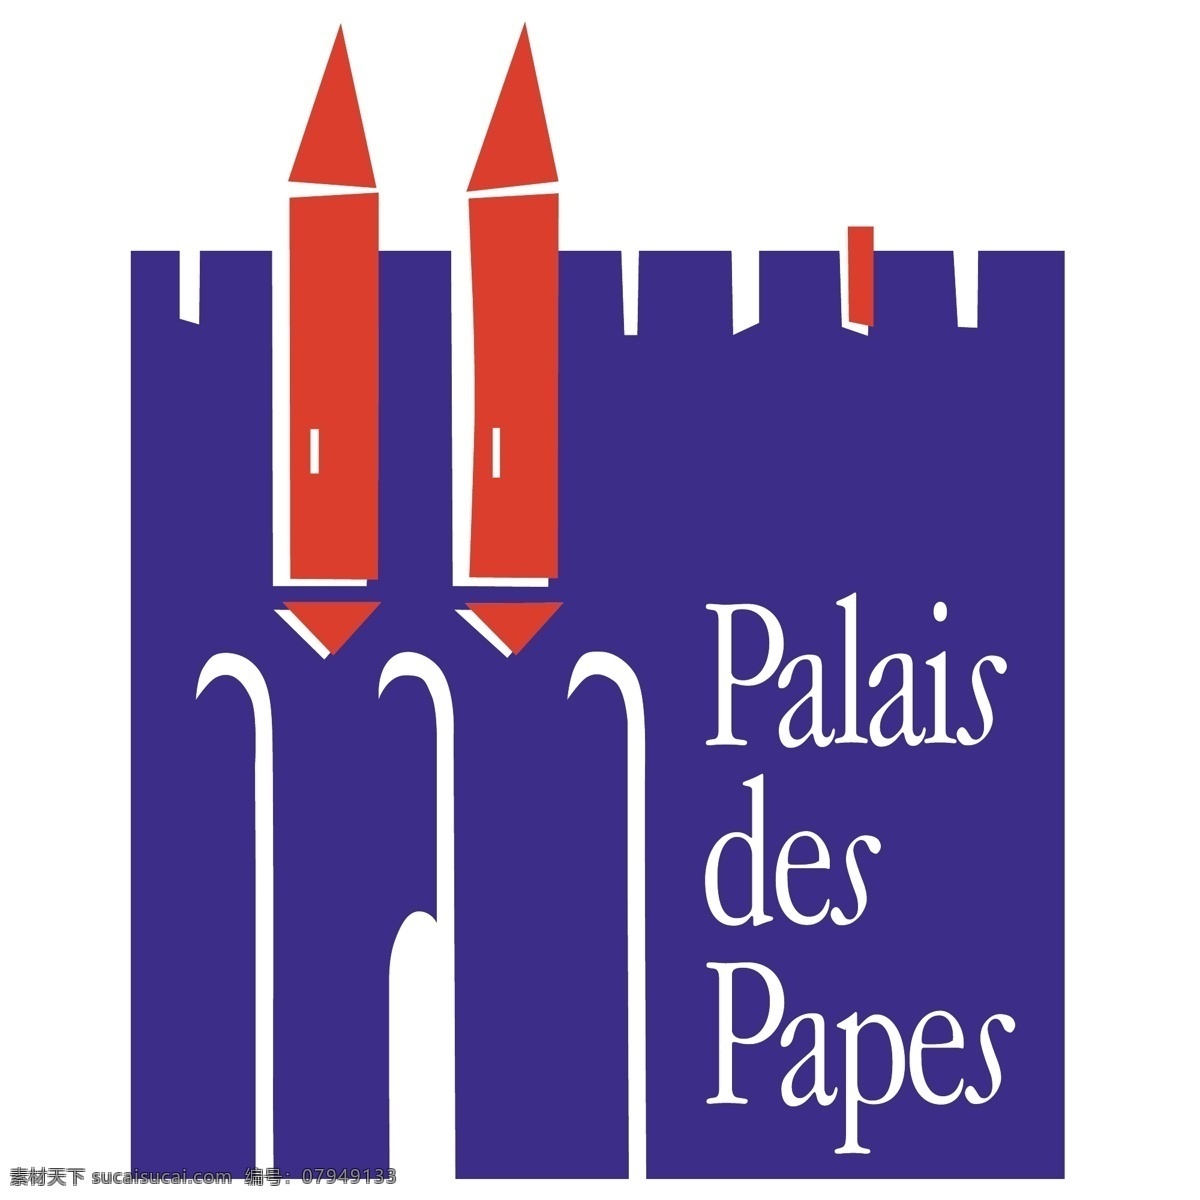 教 皇宫 免费 palais des papes 标识 psd源文件 logo设计